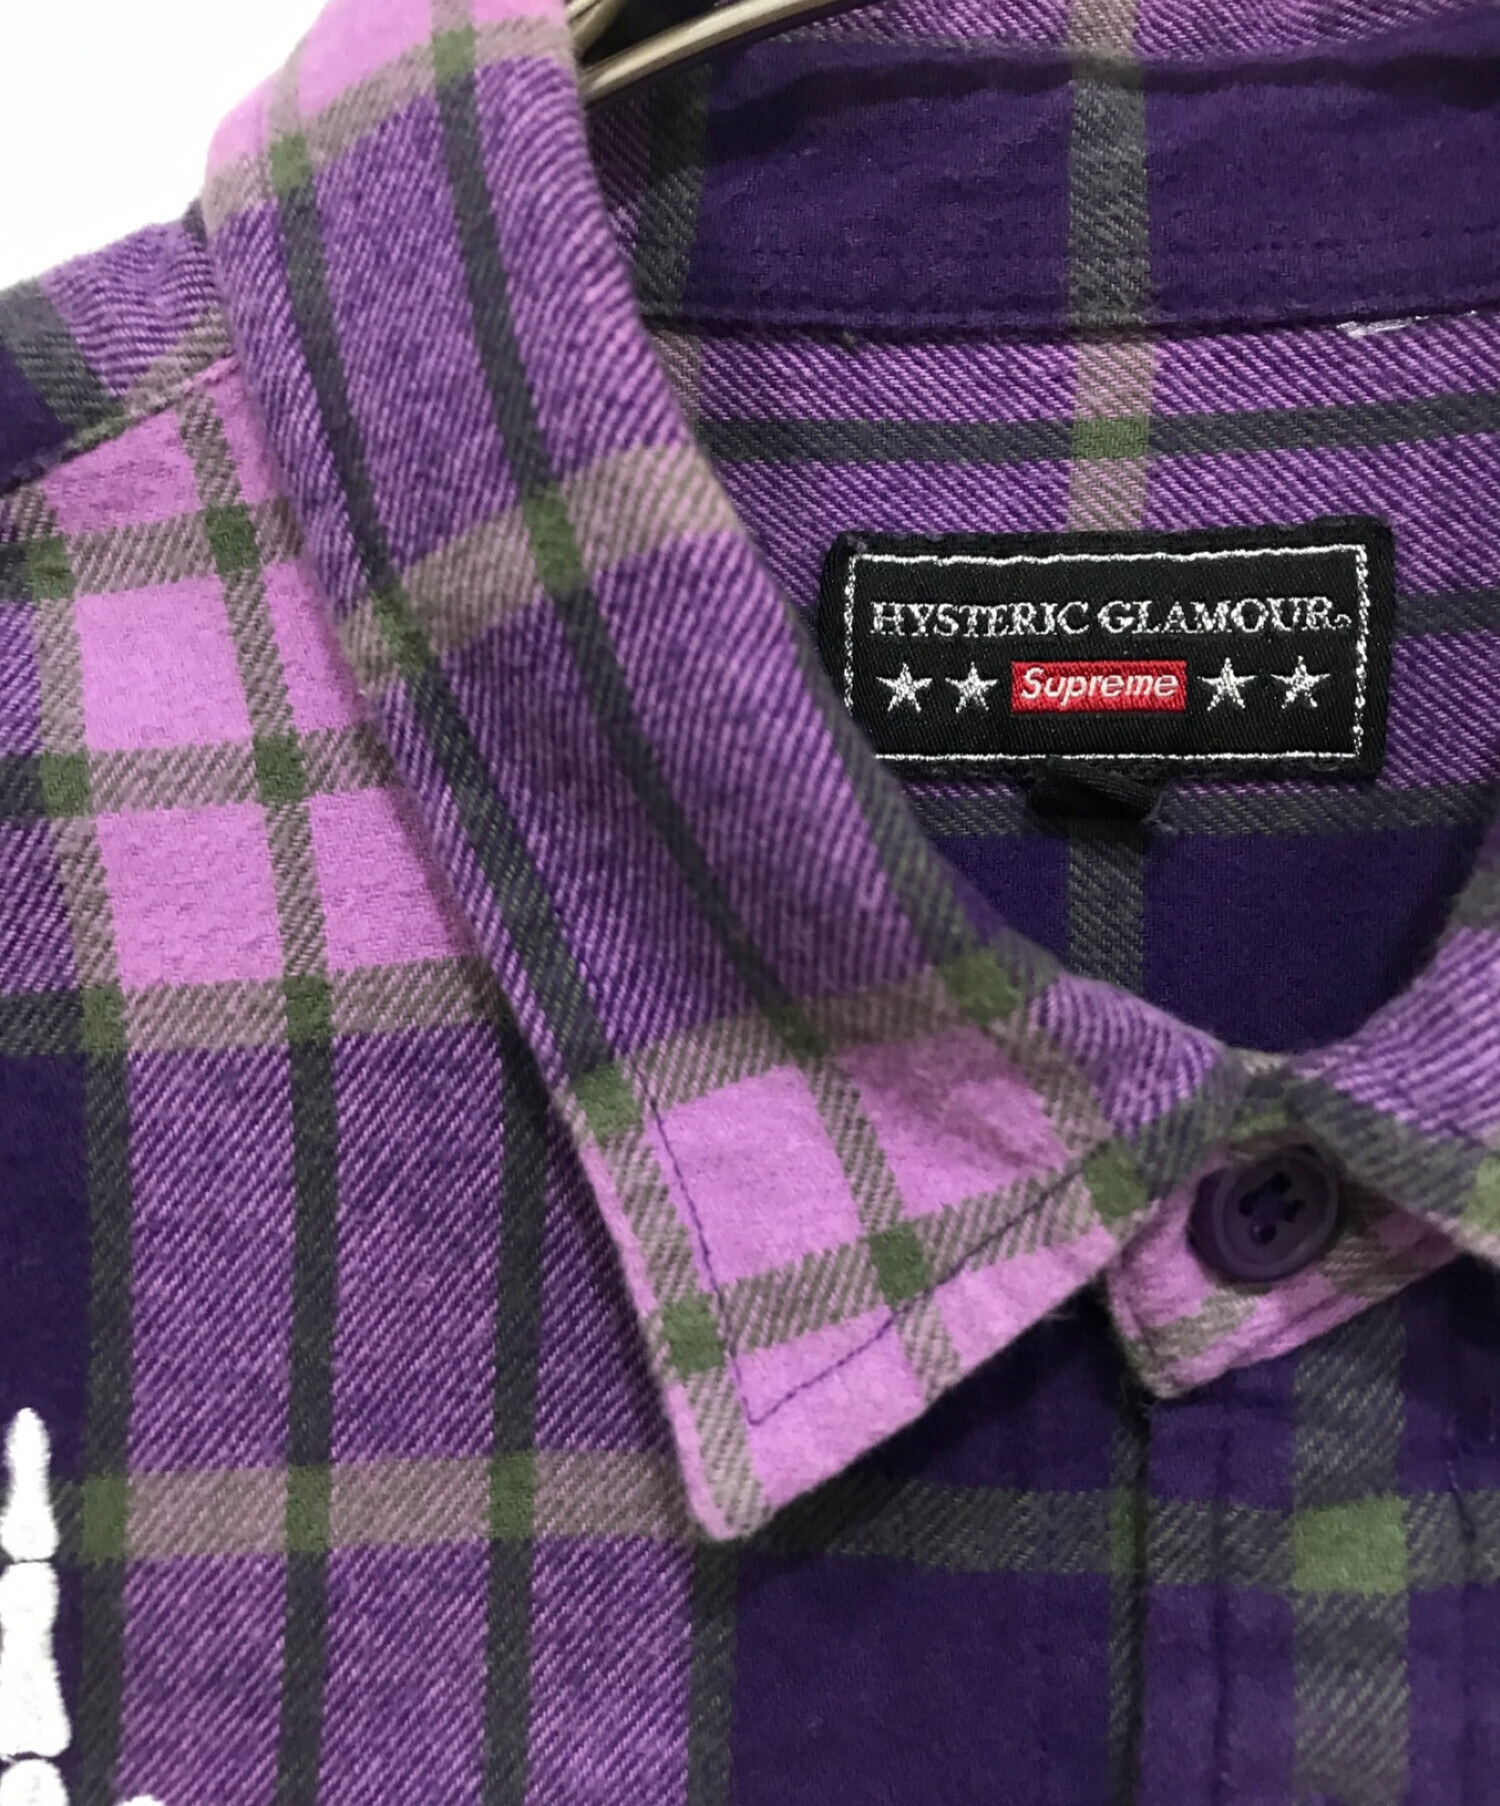 新品 送料無料 Supreme Plaid Flannel Shirt 紫